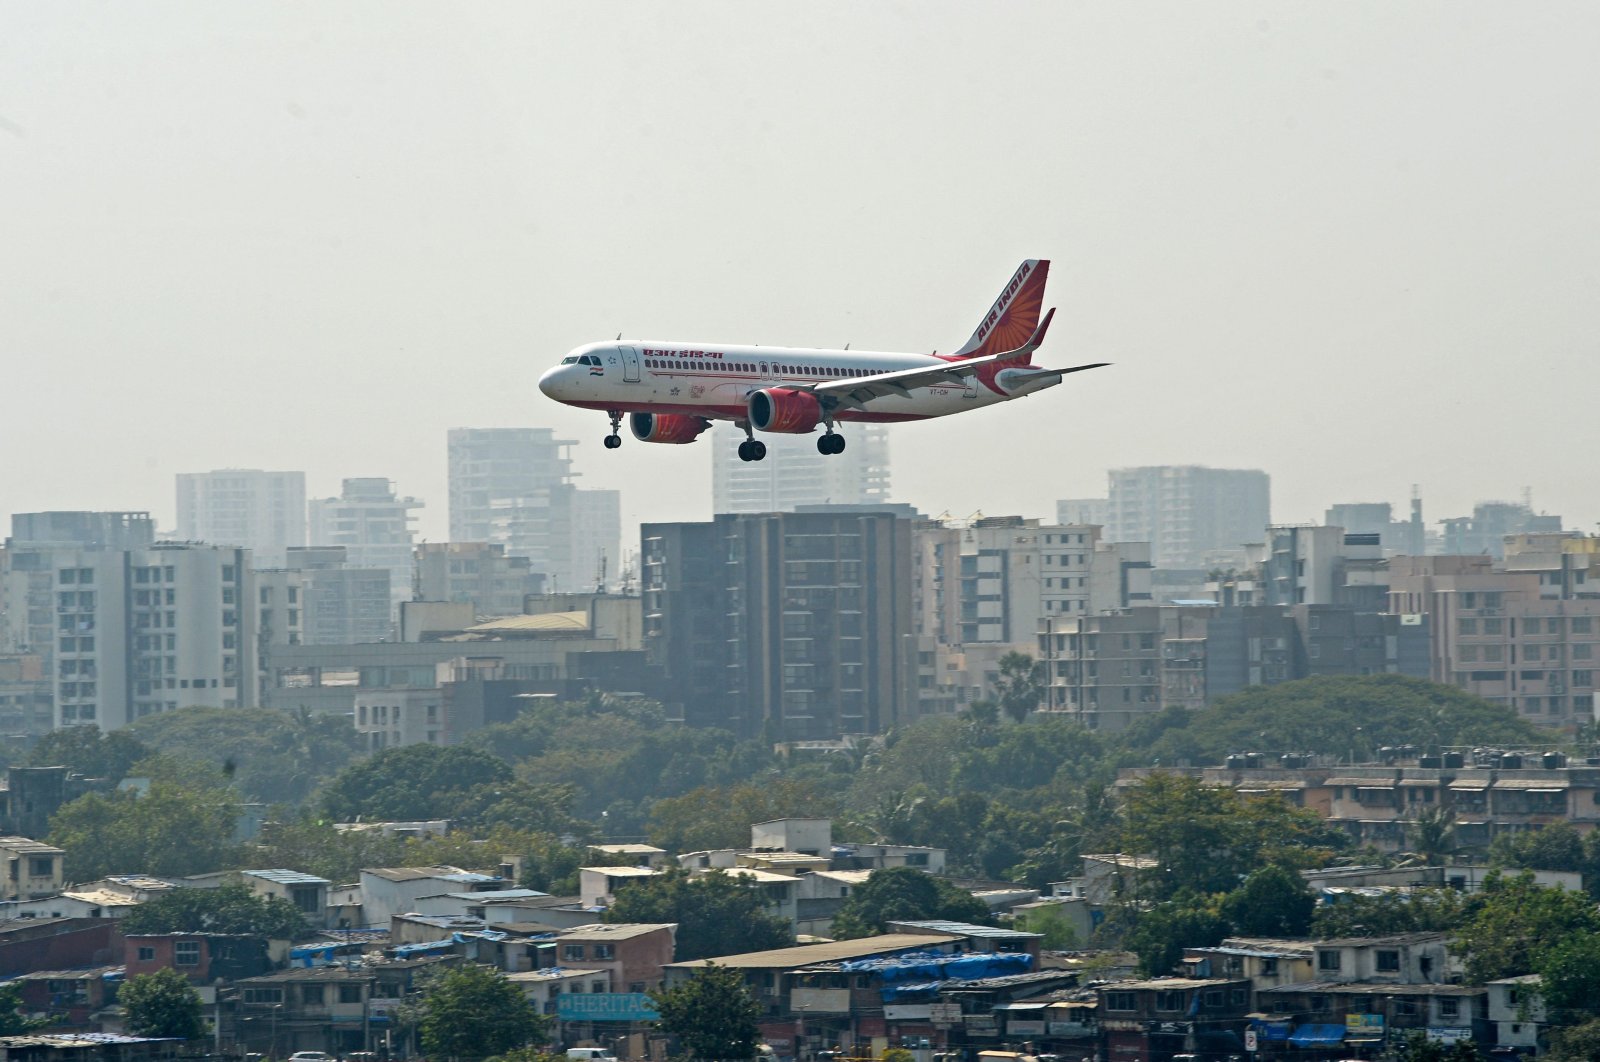 An Air India aircraft prepares to land at the Chhatrapati Shivaji Maharaj International Airport in Mumbai, India, Jan. 27, 2022. (Photo by Indranil MUKHERJEE / AFP)